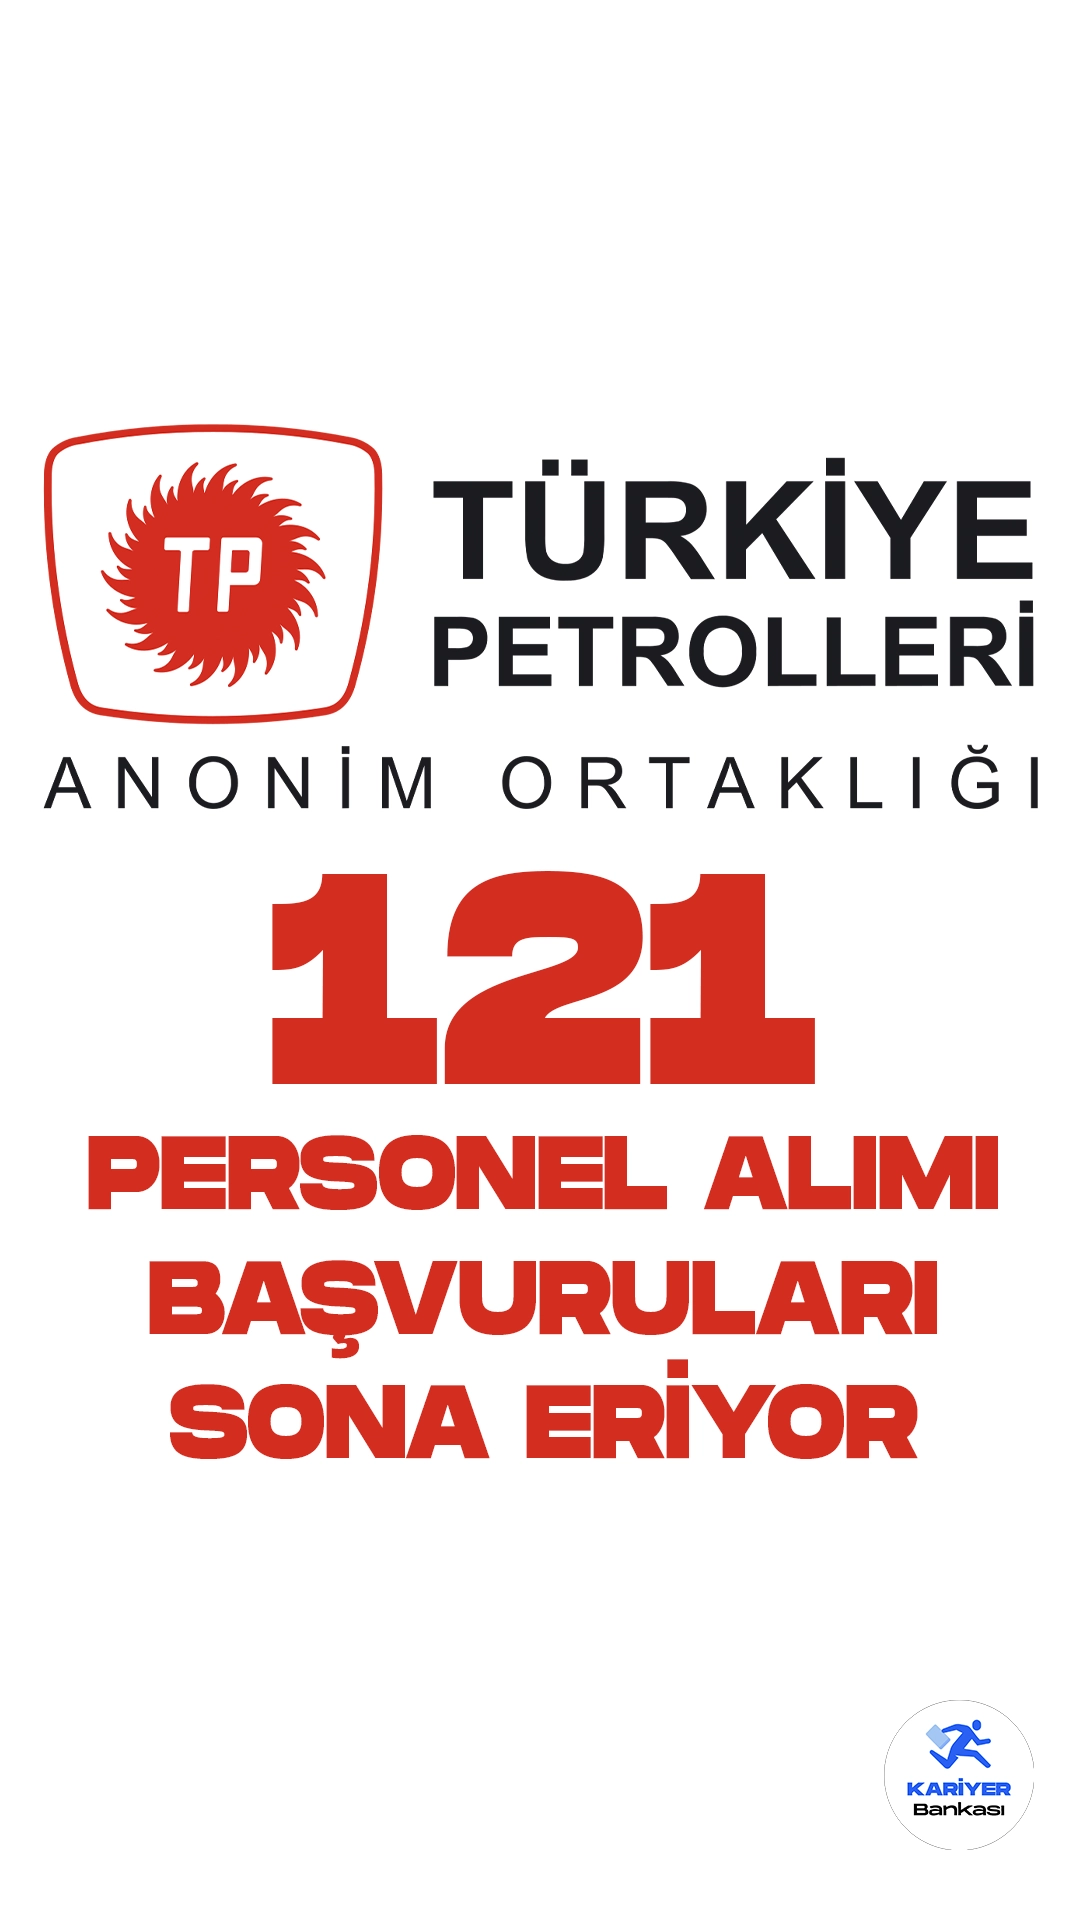 Türkiye Petrolleri Anonim Ortaklığı (TPAO) personel alımı başvurularında son saatlere girildi. İlgili alım duyurusunda TPAO'ya 121 personel alımı yapılacağı aktarılmış, başvuruların 7 Ağustos'ta sona ereceği kaydedilmişti.Başvurular bugün sona eriyor. Başvuru yapacak adayların şartları taşıması gerekmektedir.